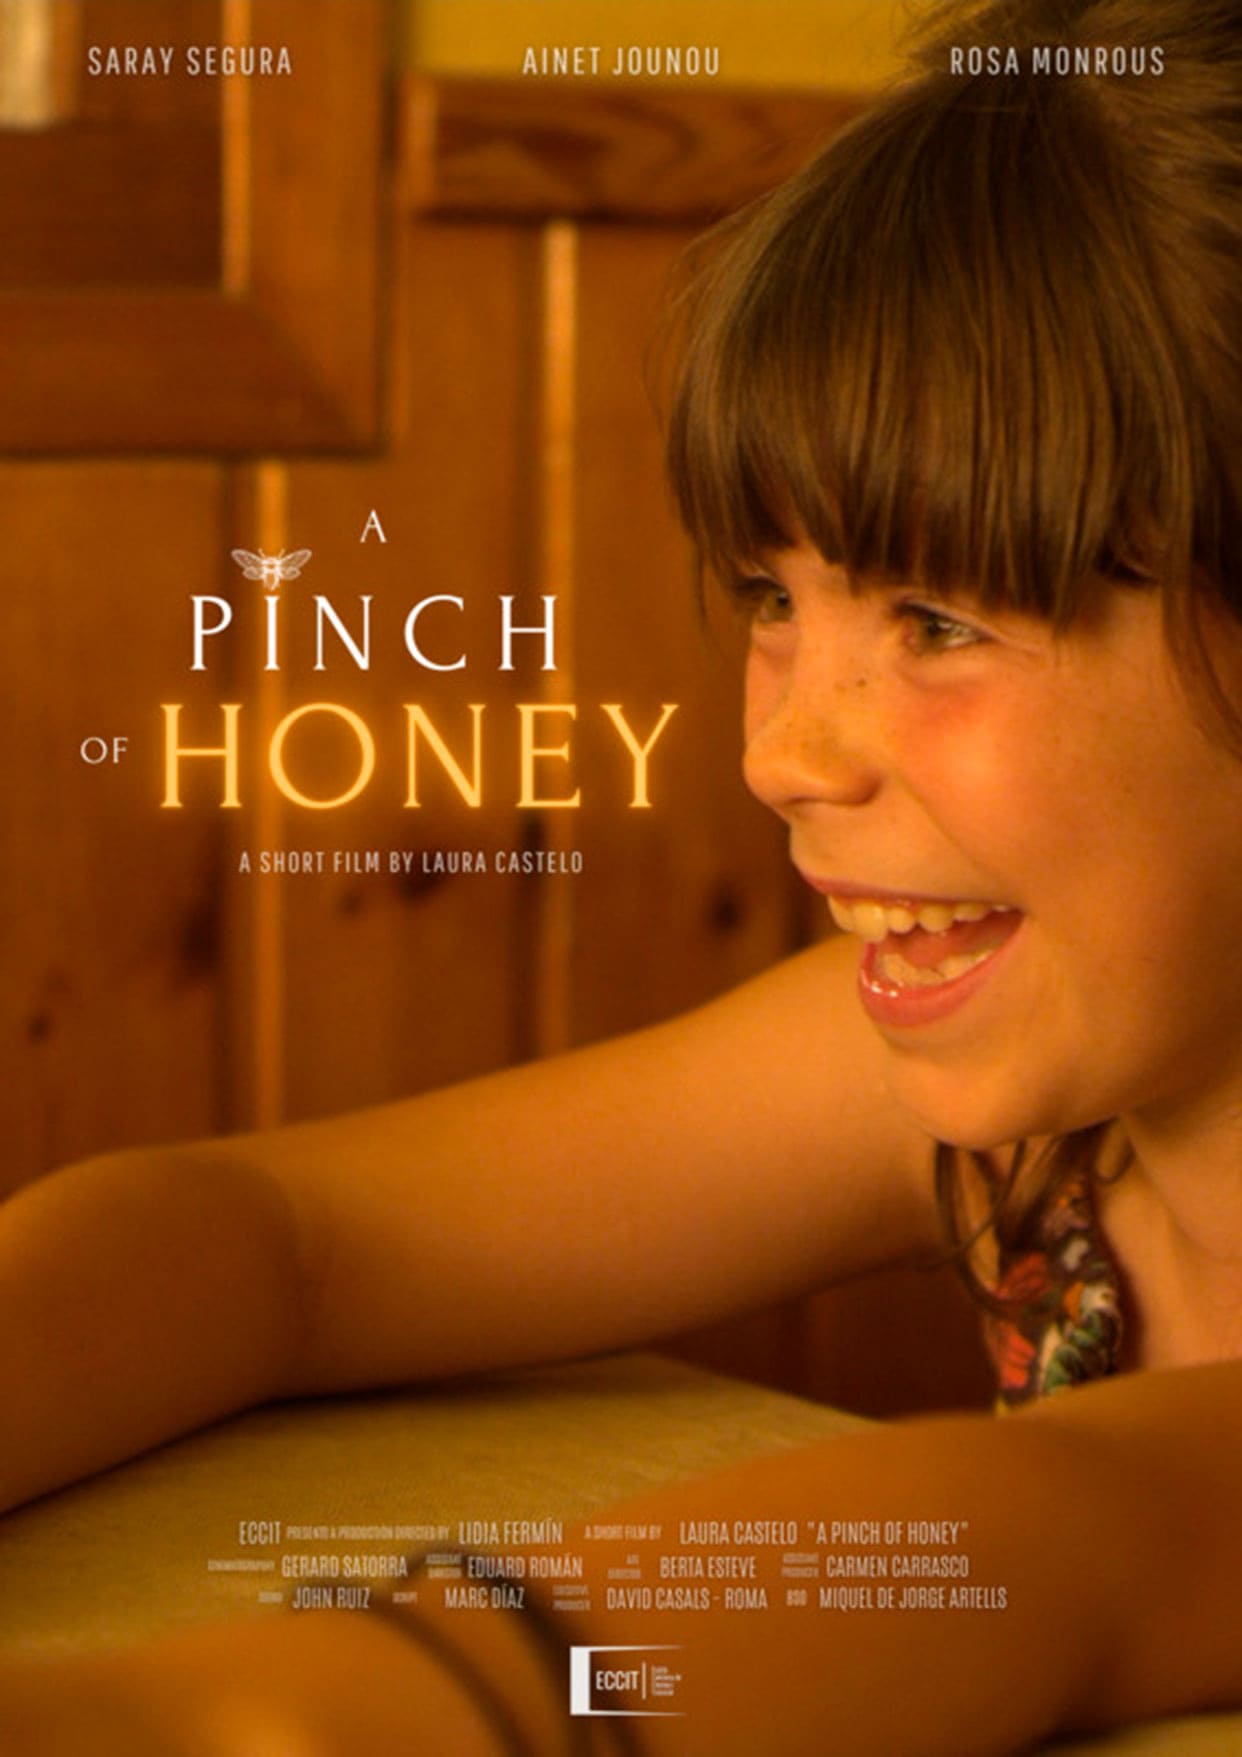 A pinch of honey